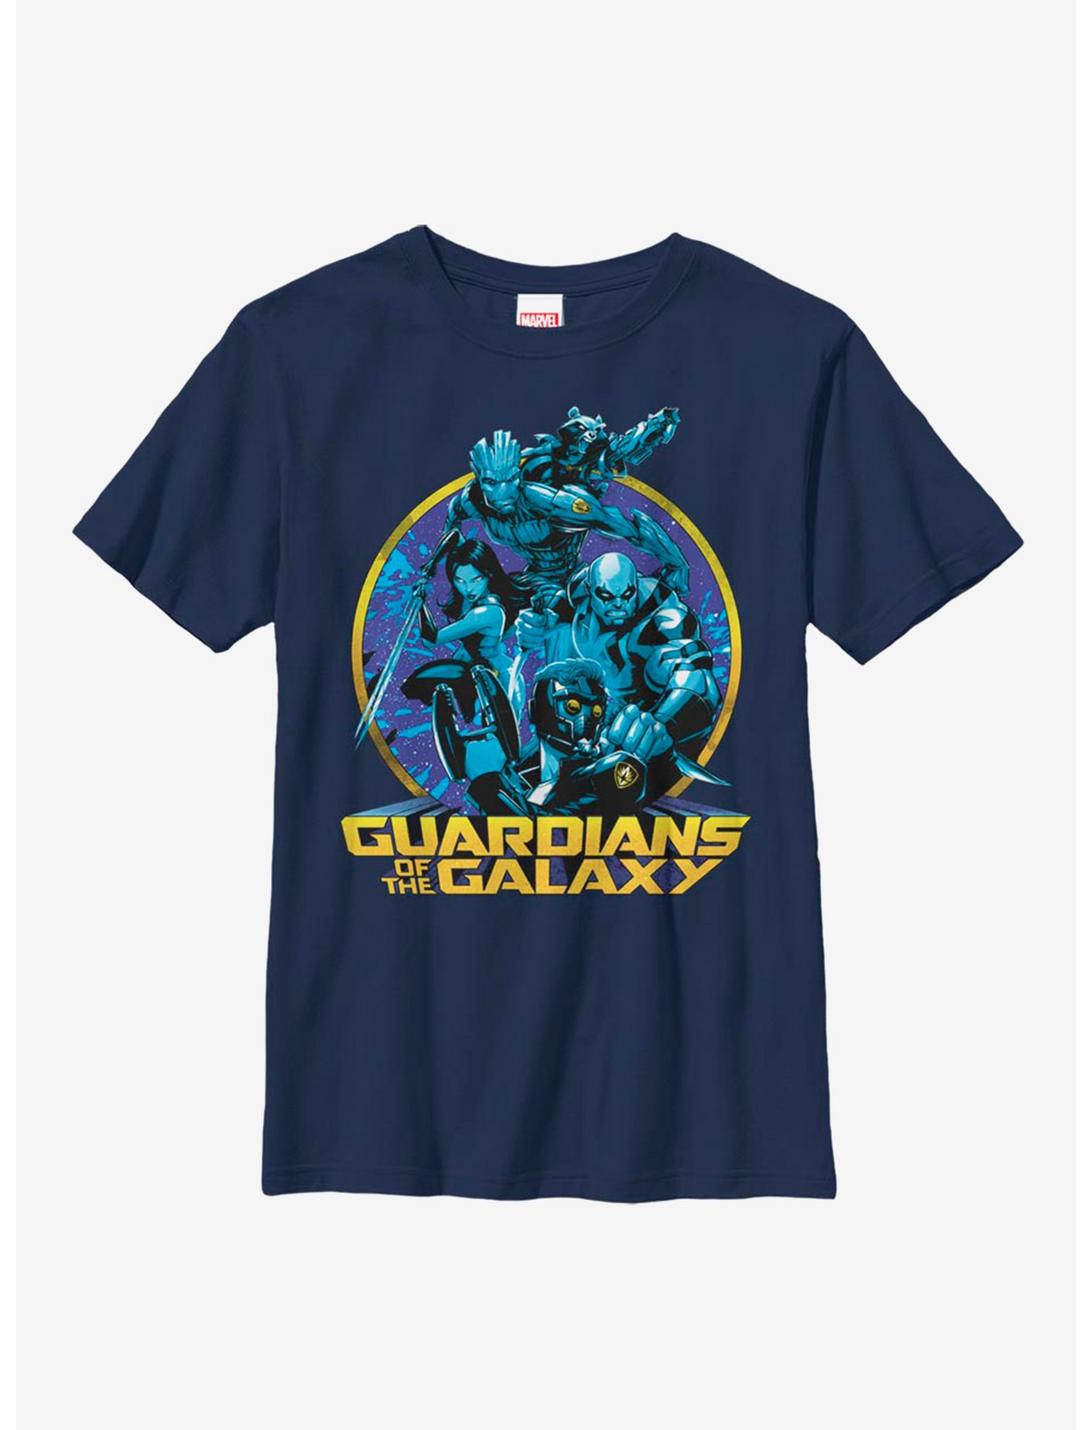 Marvel Guardians Of The Galaxy Galaxy Hues Youth T-Shirt, NAVY, hi-res